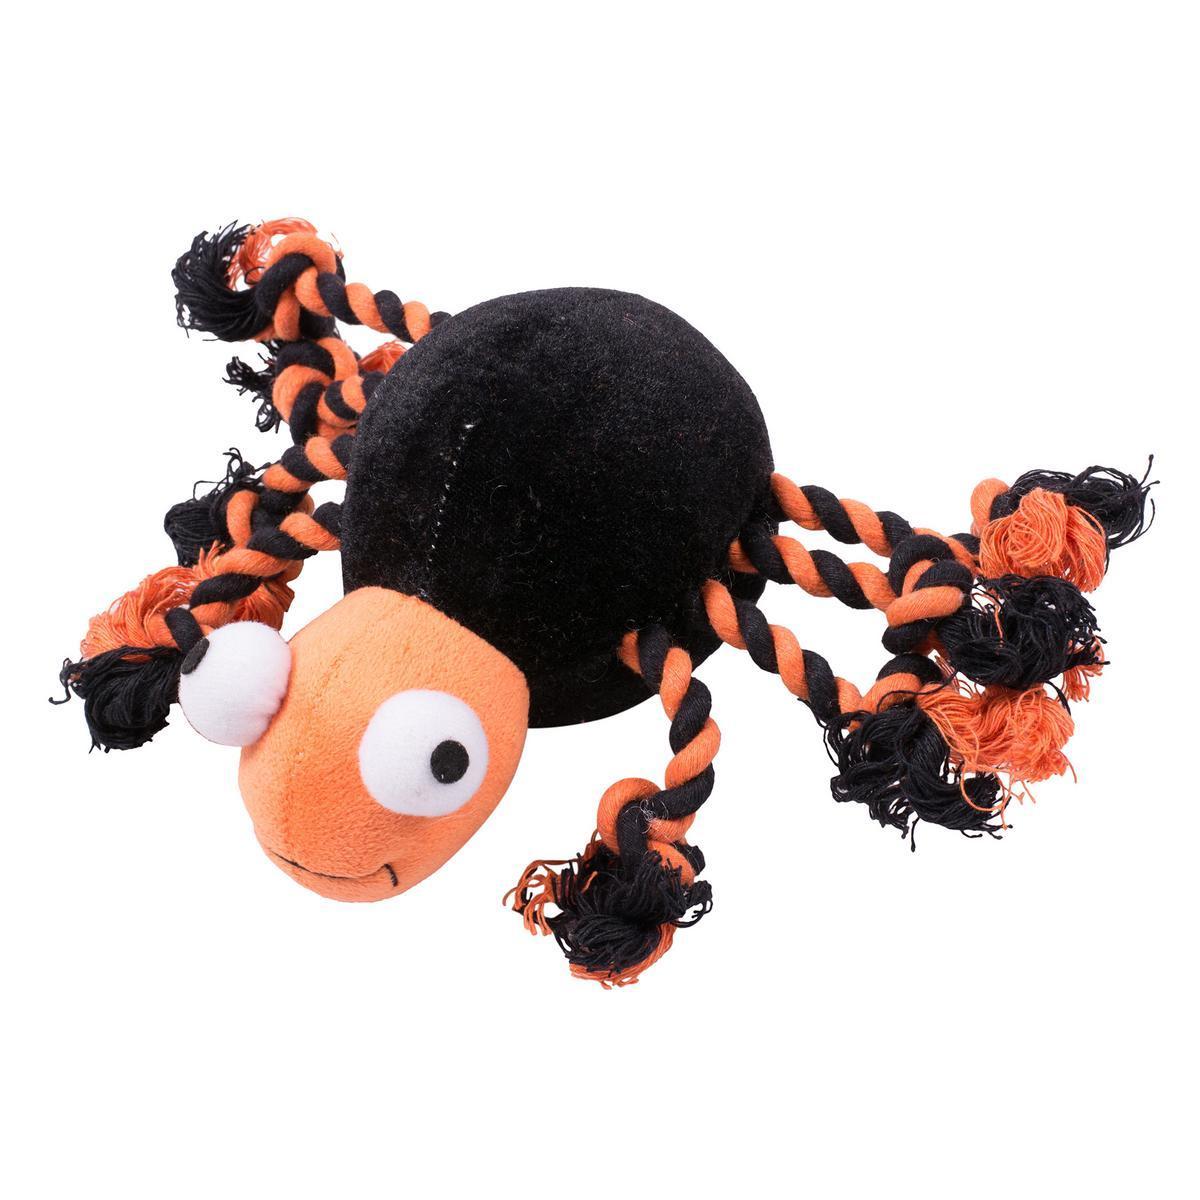 Jouet araignée pour chien - 100 % Polyester - 27 x 16 x H 9 cm - Noir et orange